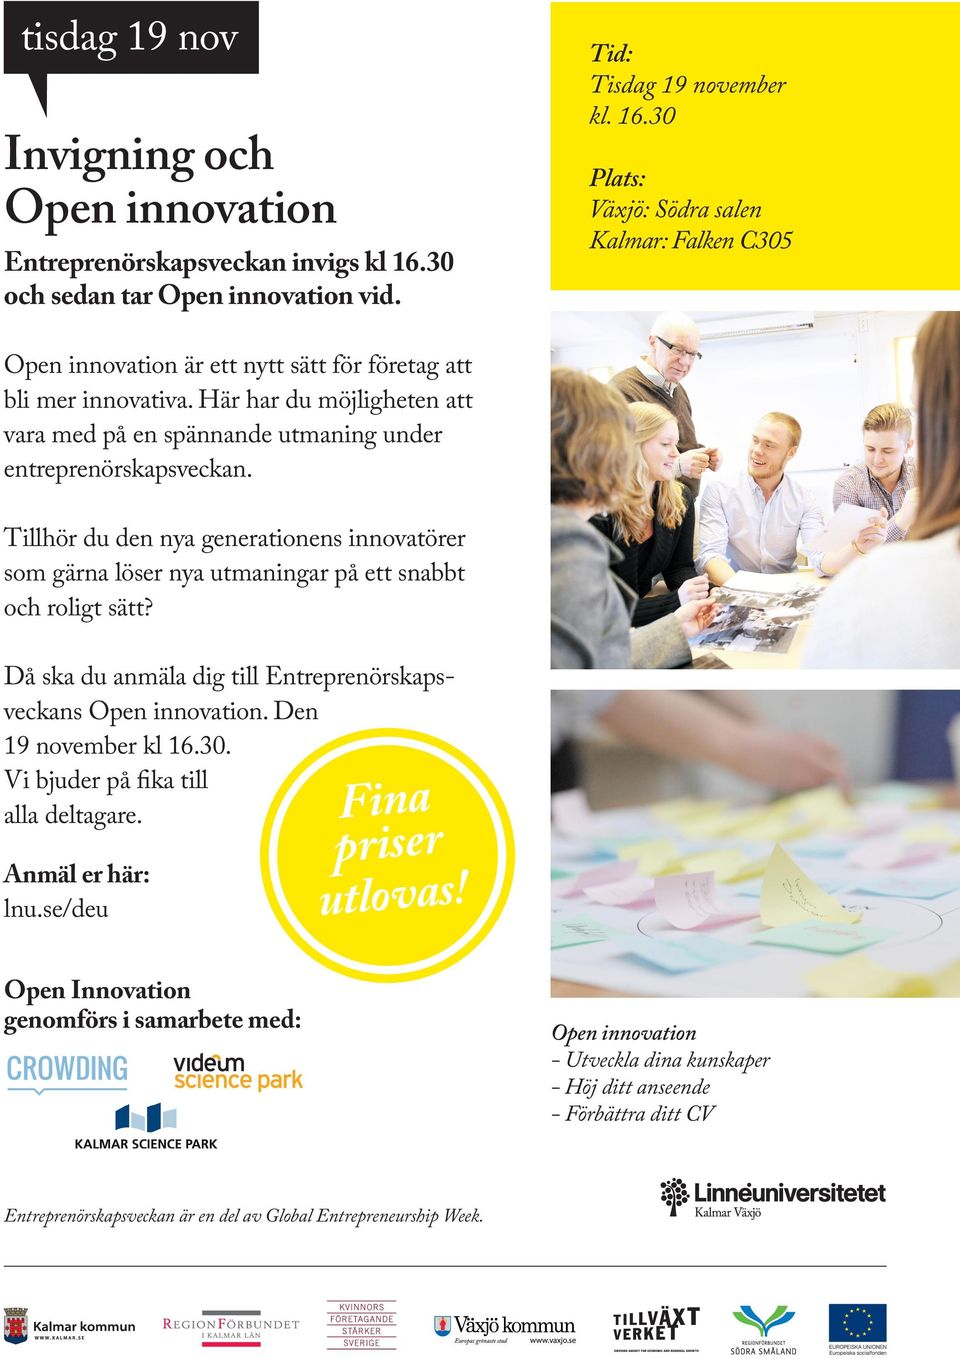 Då ska du anmäla dig till Entreprenörskapsveckans Open innovation. Den 19 november kl 16.30. Vi bjuder på fika till alla deltagare. Anmäl er här: lnu.se/deu Fina priser utlovas!